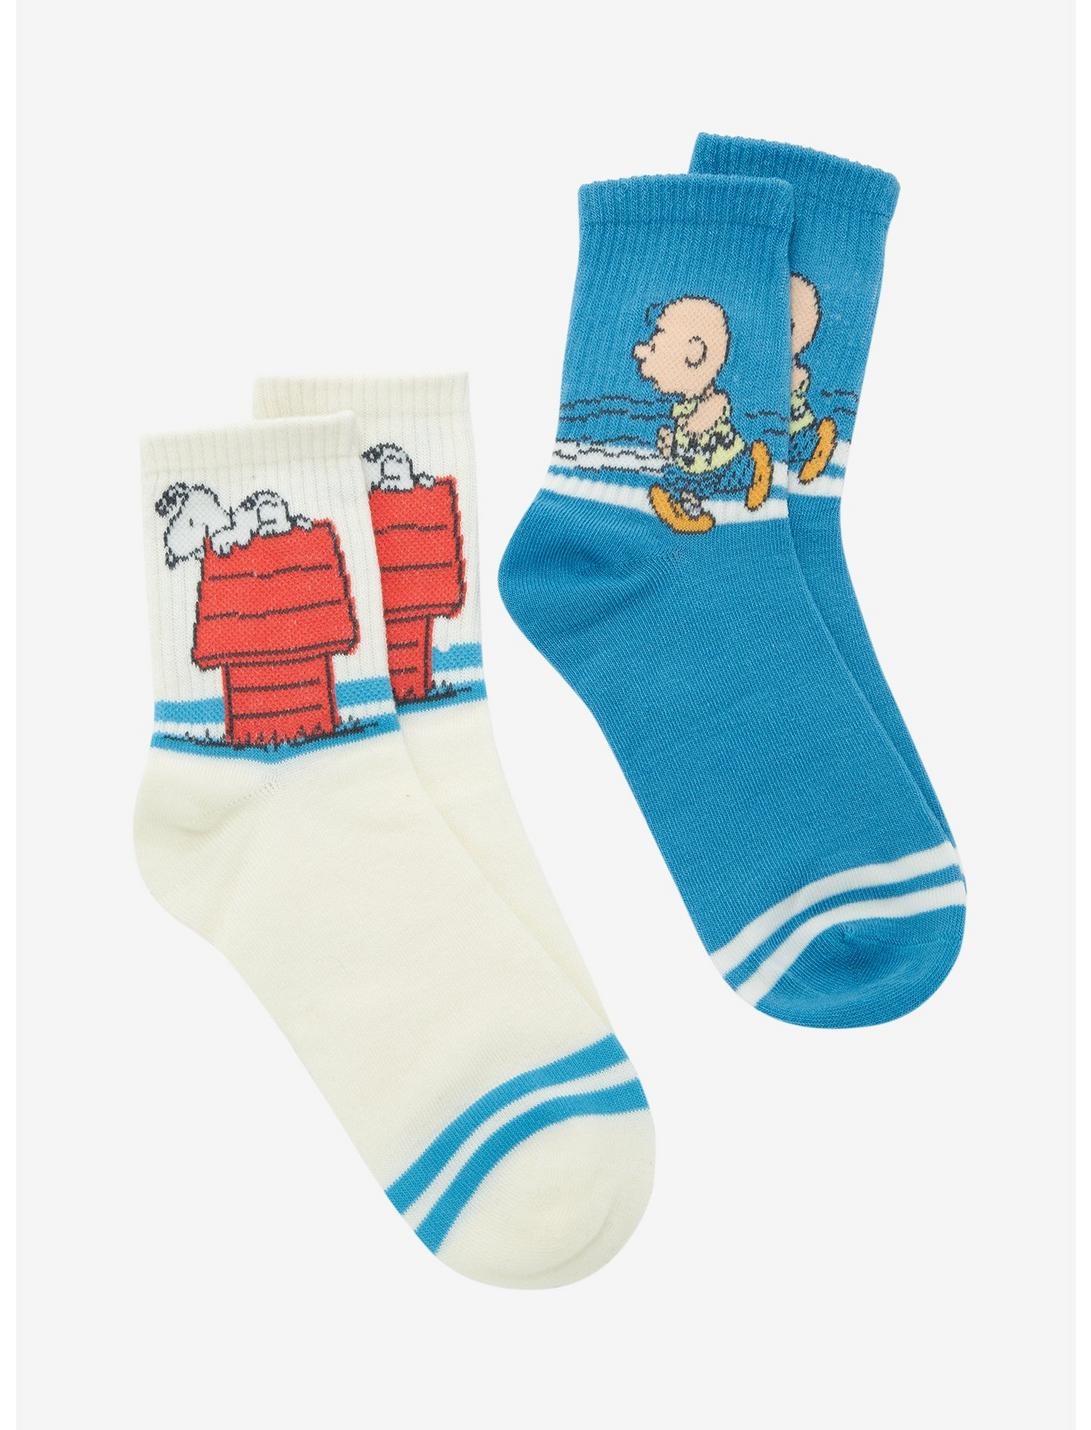 Peanuts Charlie Brown & Snoopy Crew Socks 2 Pair, , hi-res